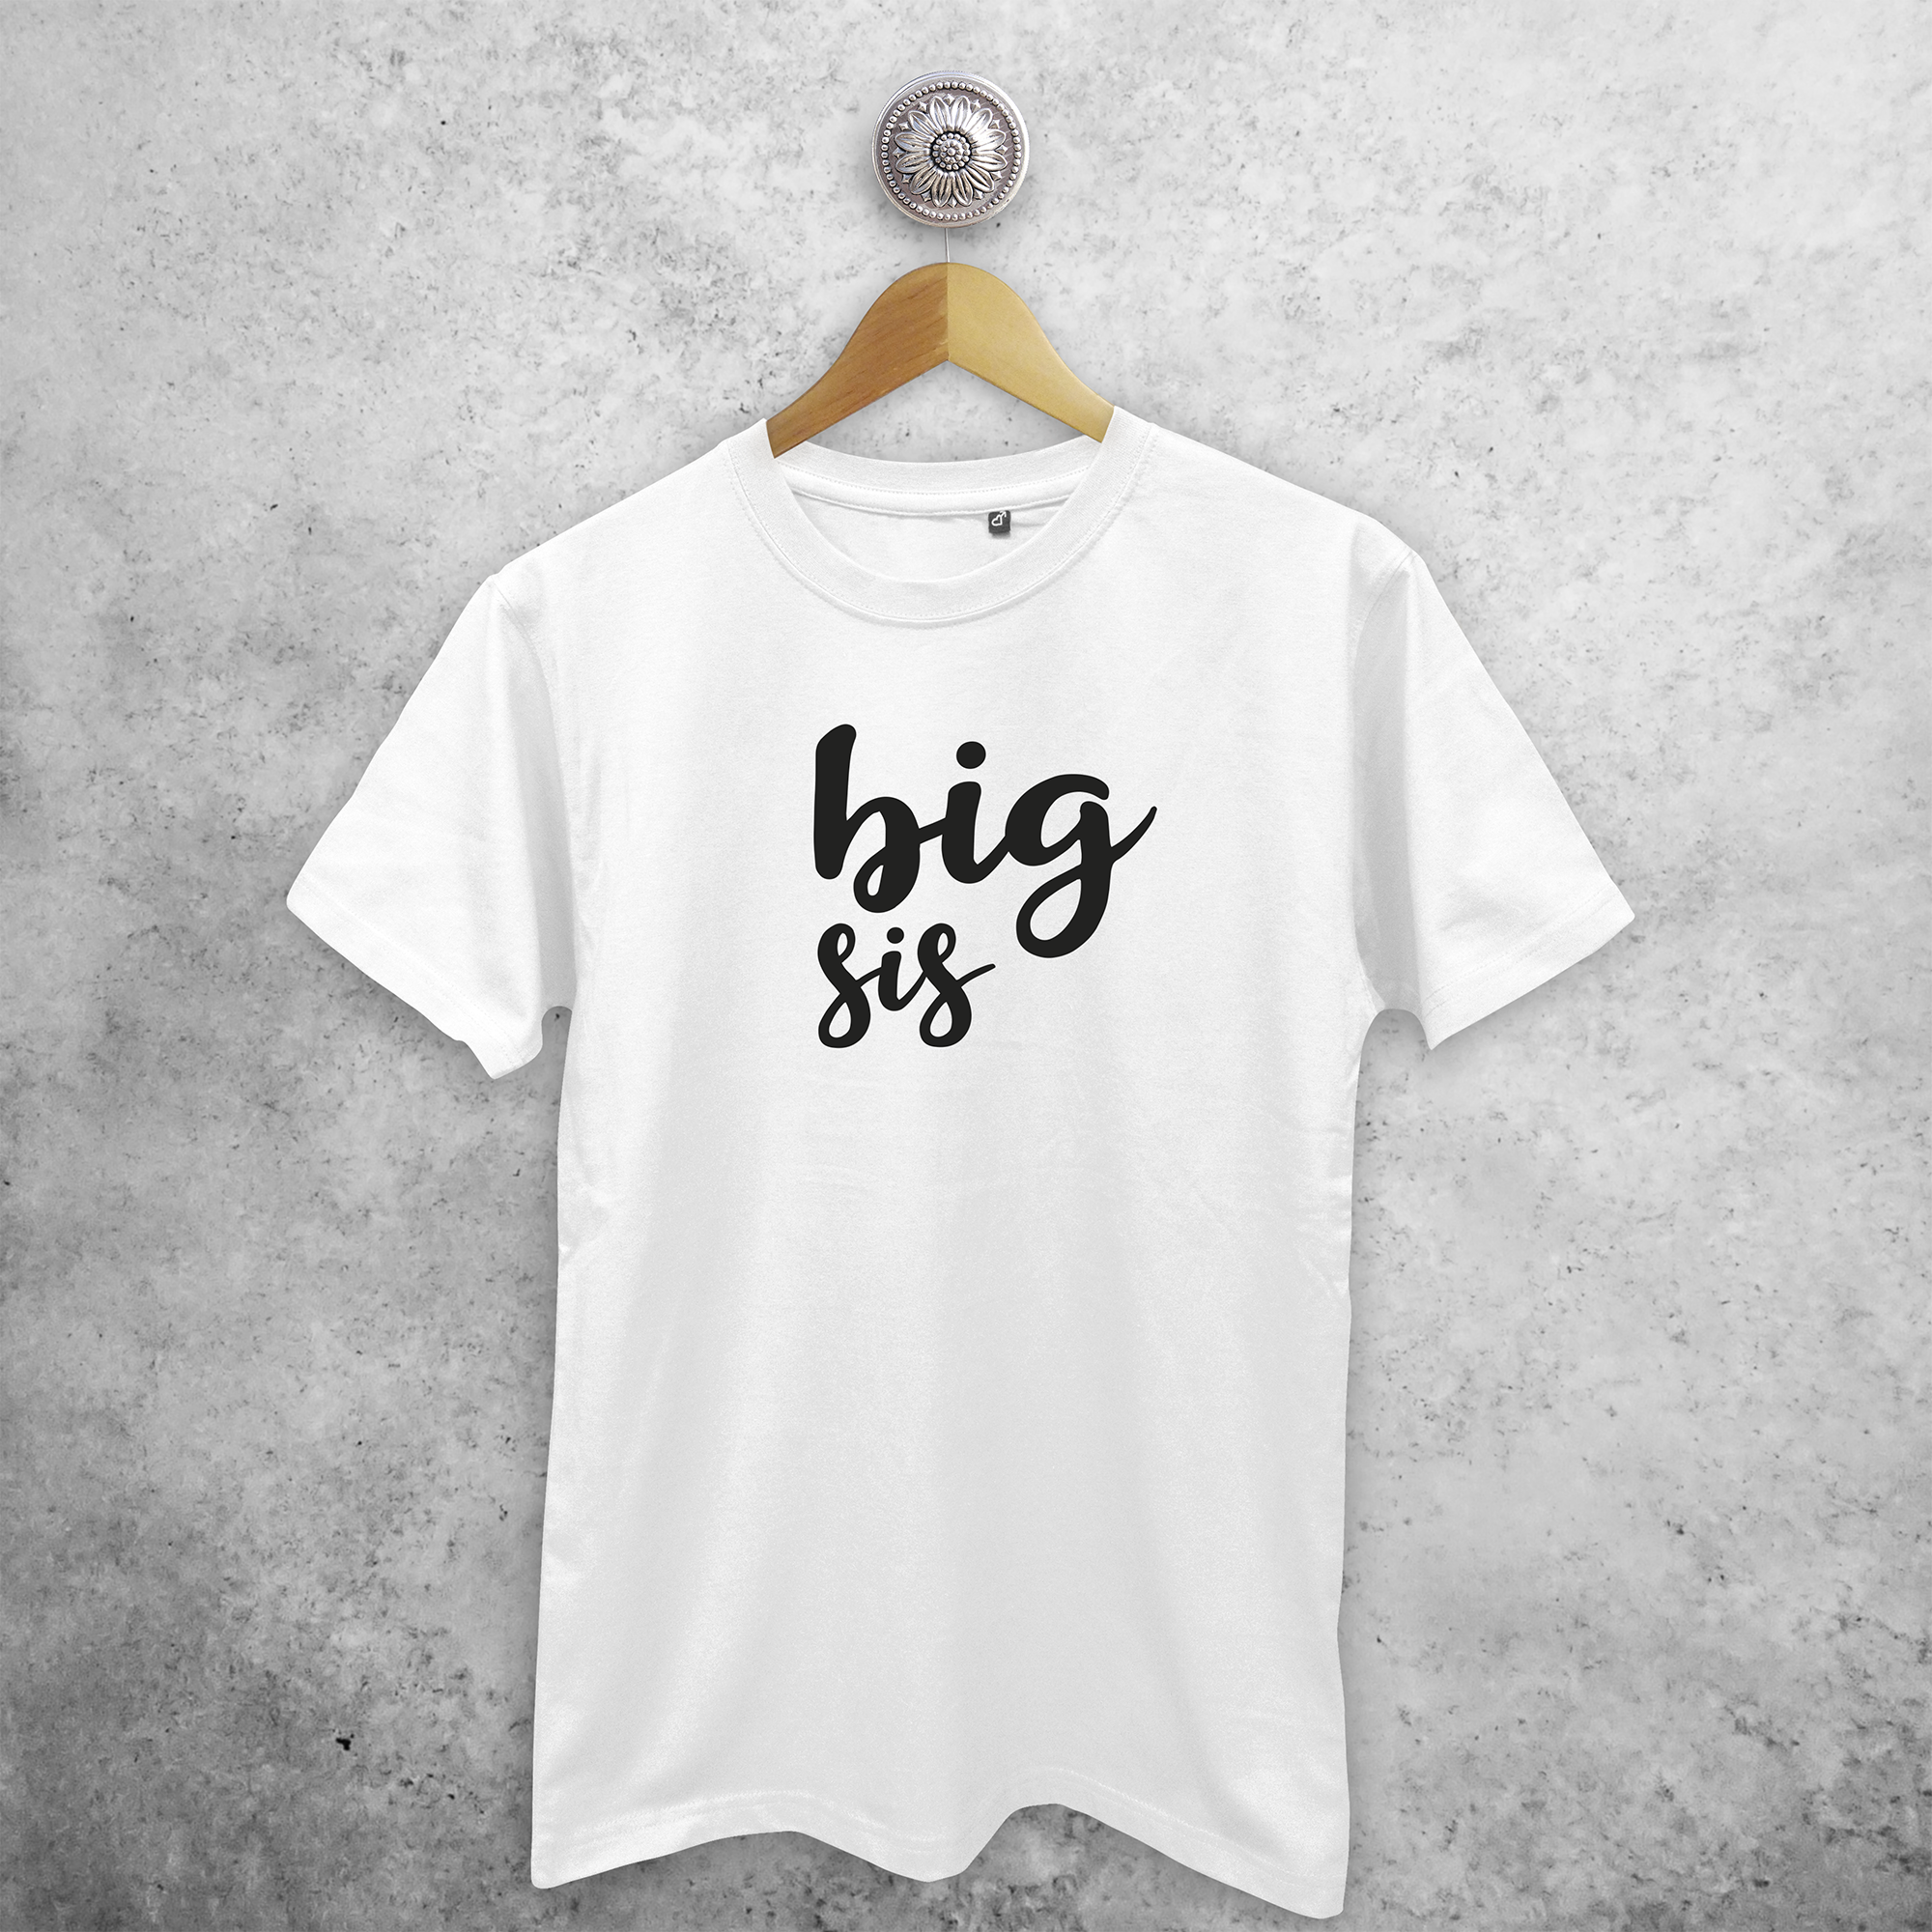 'Big Sis' adult shirt